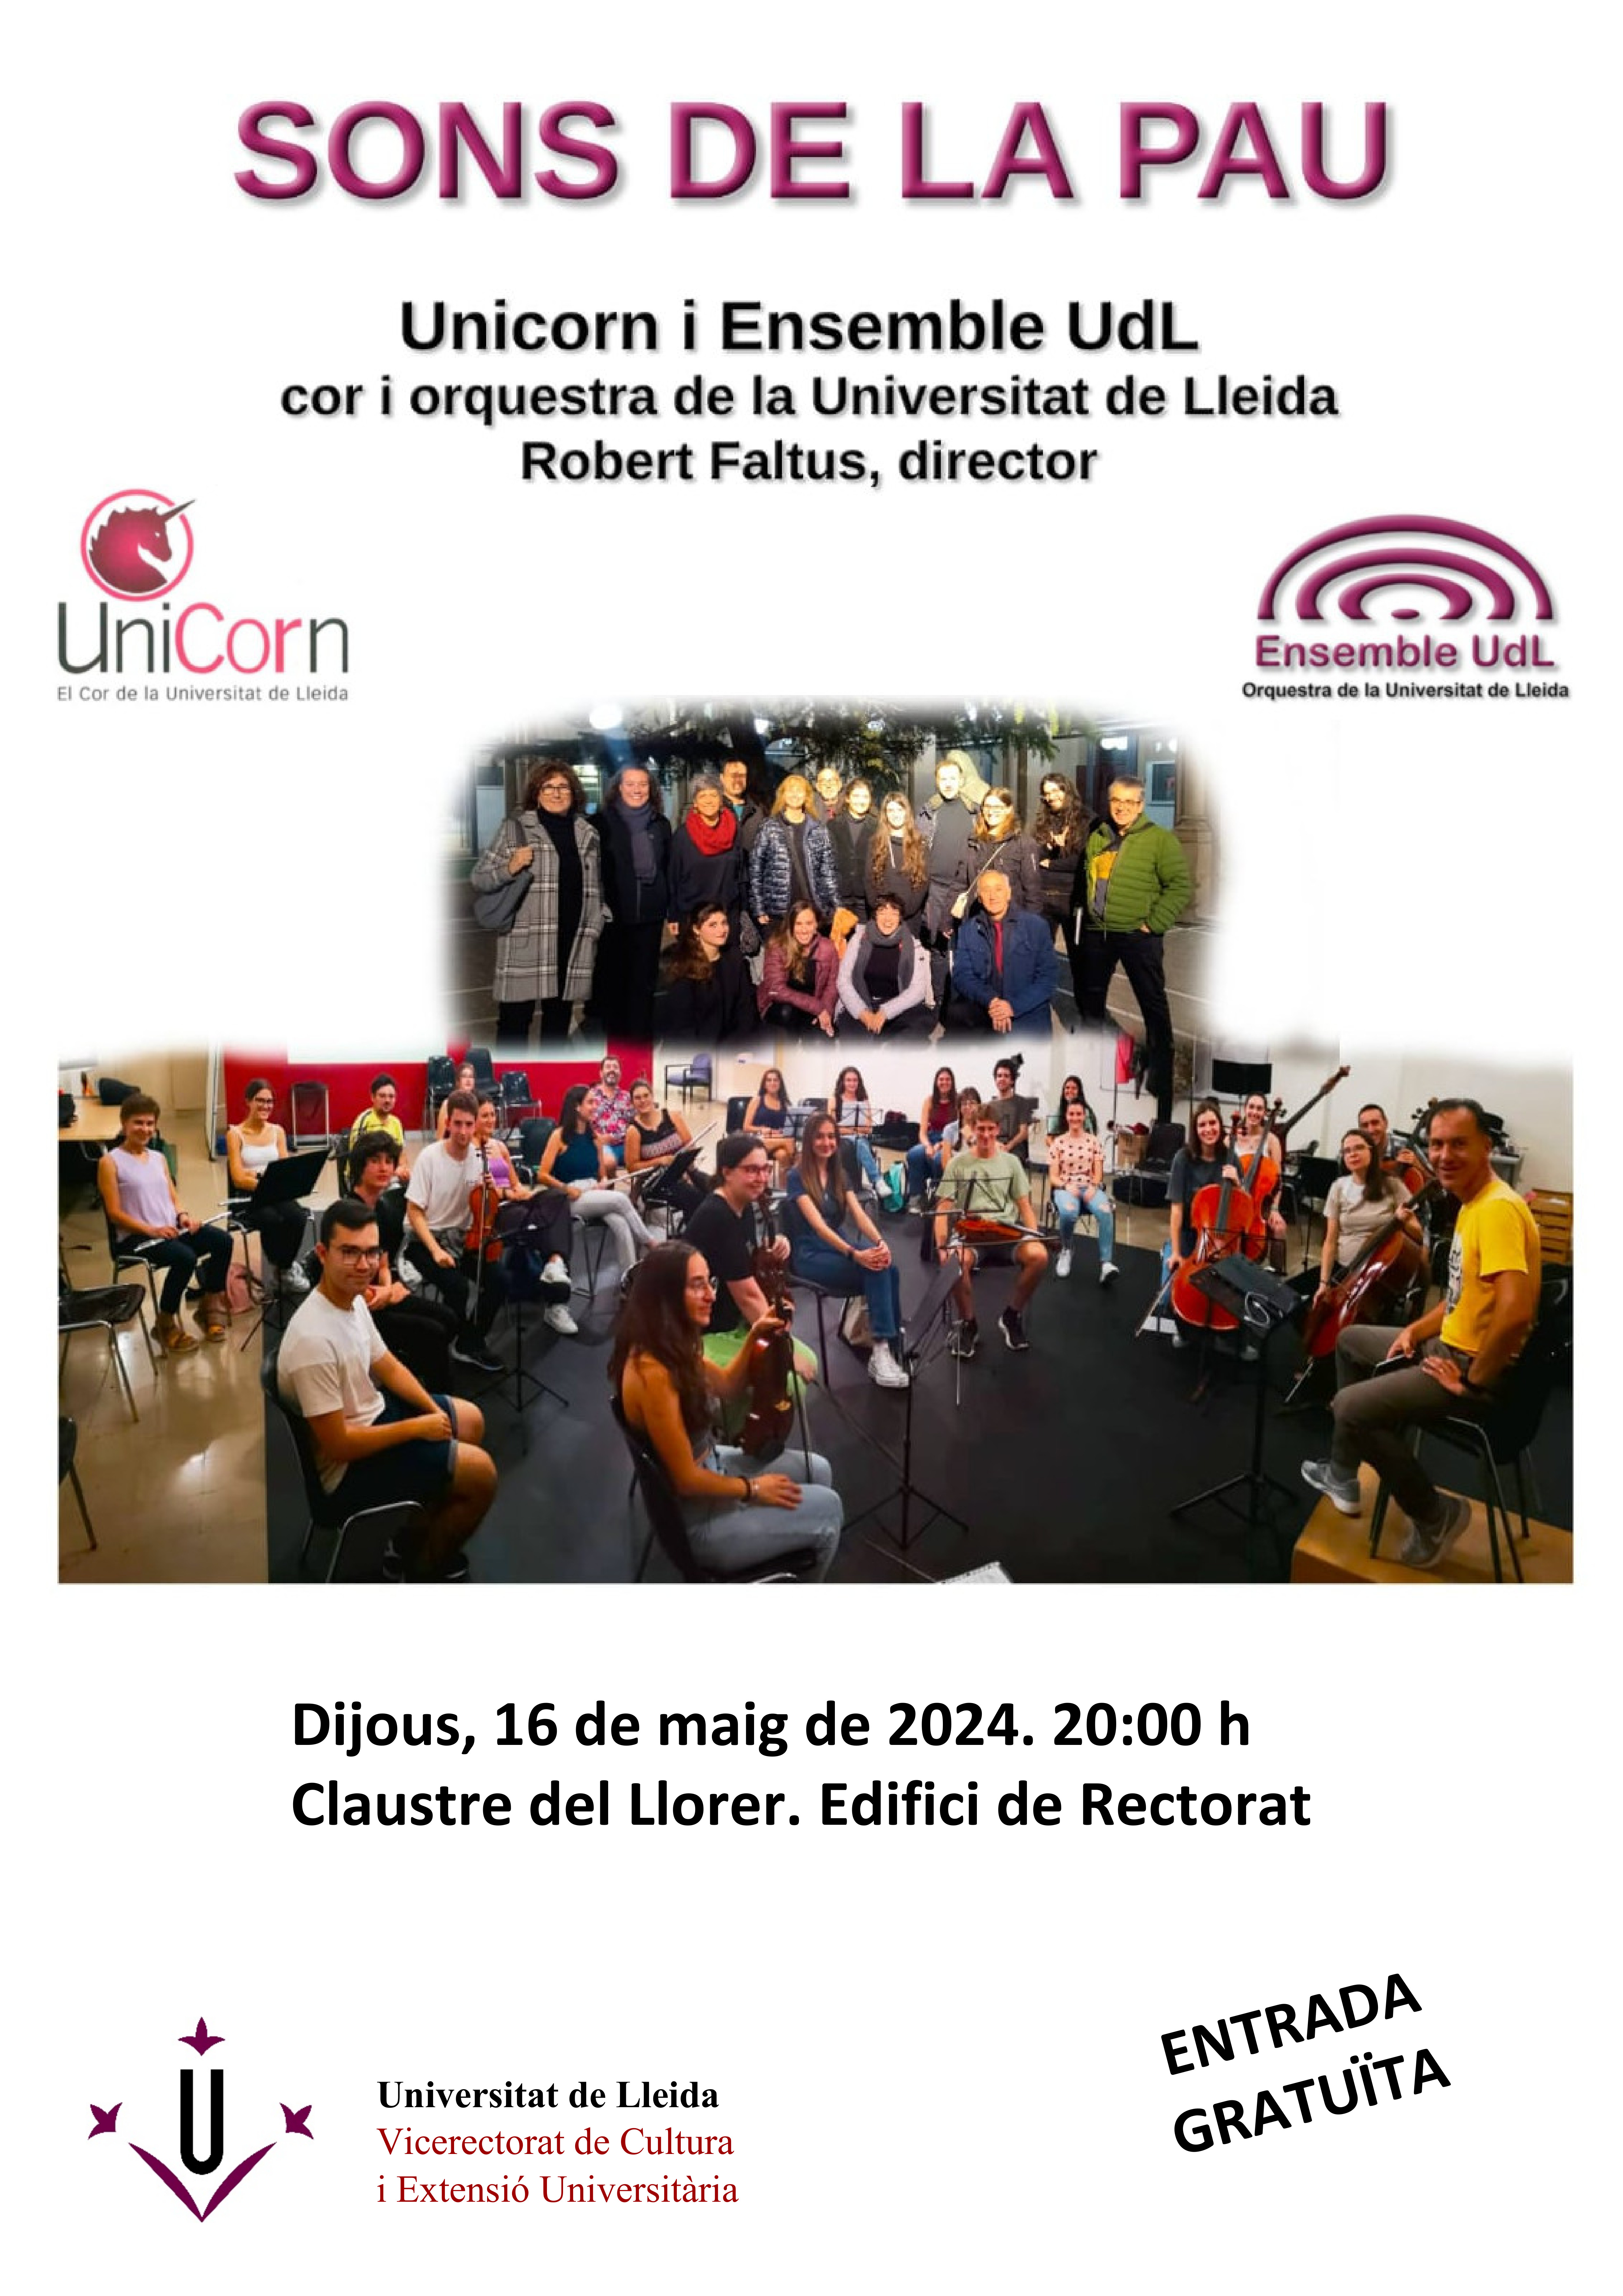 Concert: Sons de la pau, a càrrec de l'Unicorn i Ensemble UdL